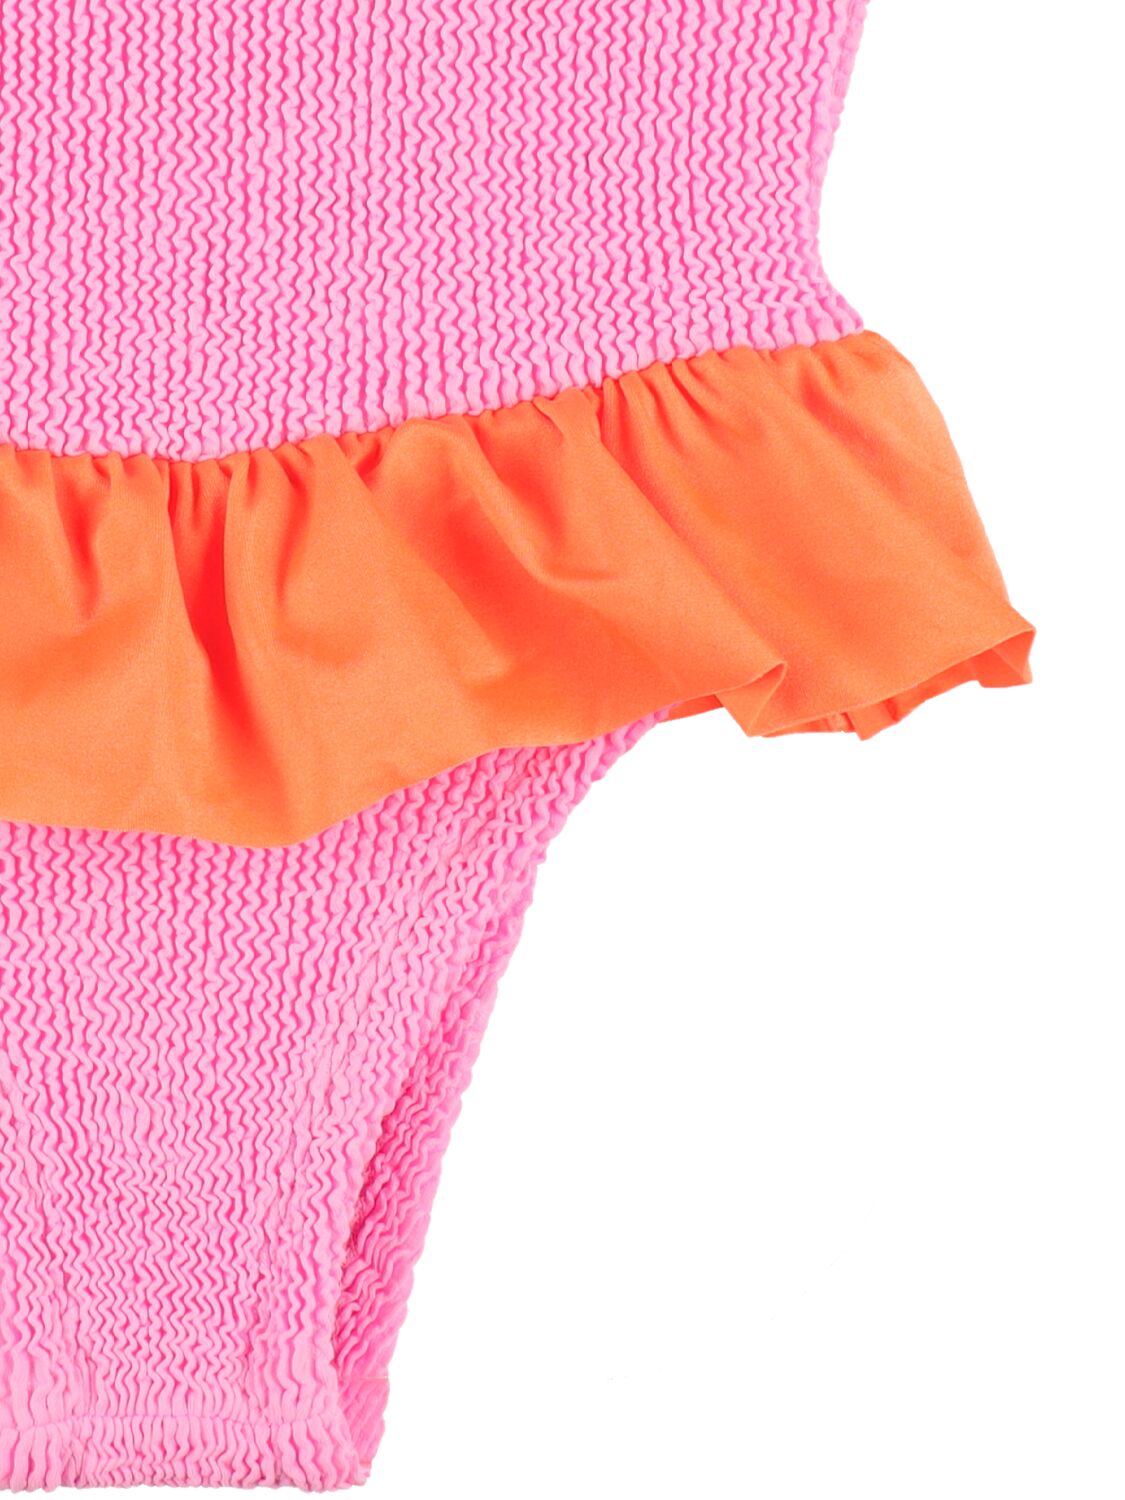 Shop Hunza G One Piece Lycra Swimsuit W/ Ruffle In Pink,orange